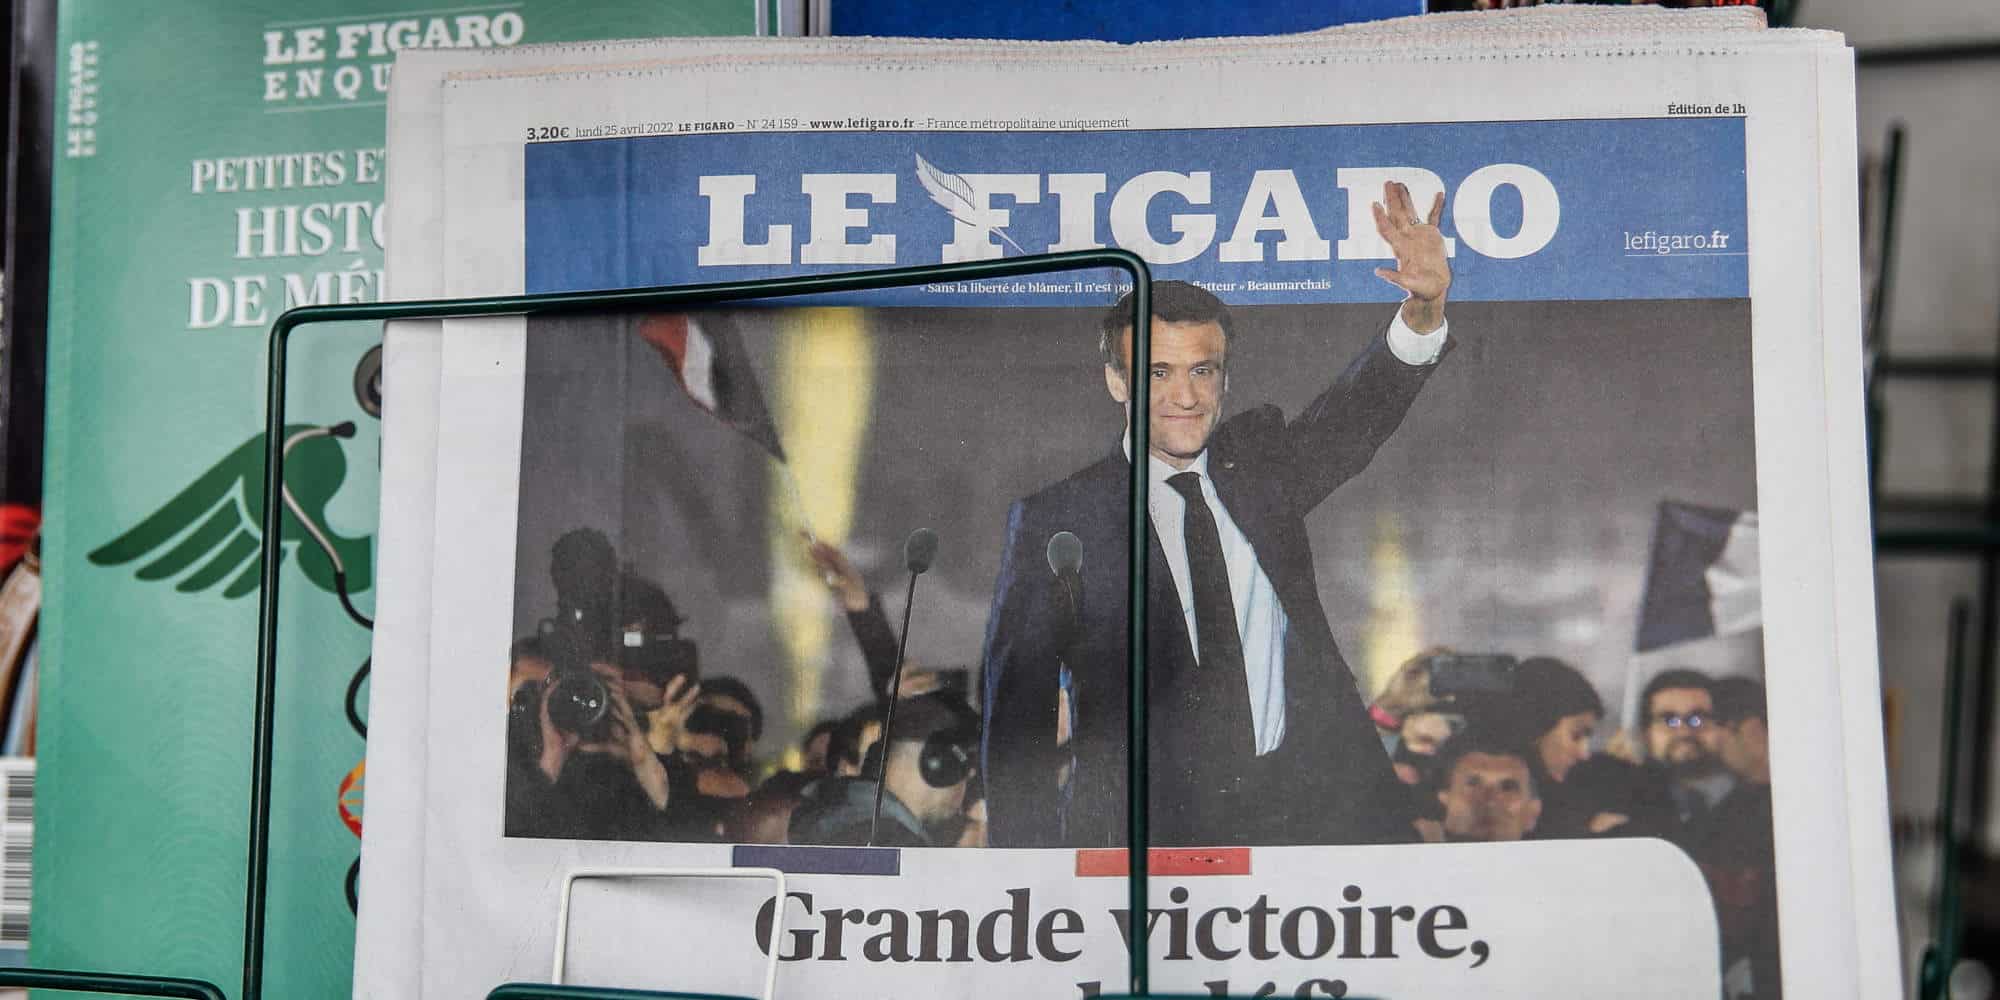 Πρωτοσέλιδο της εφημερίδας Le Figaro, με τον Εμανουέλ Μακρόν